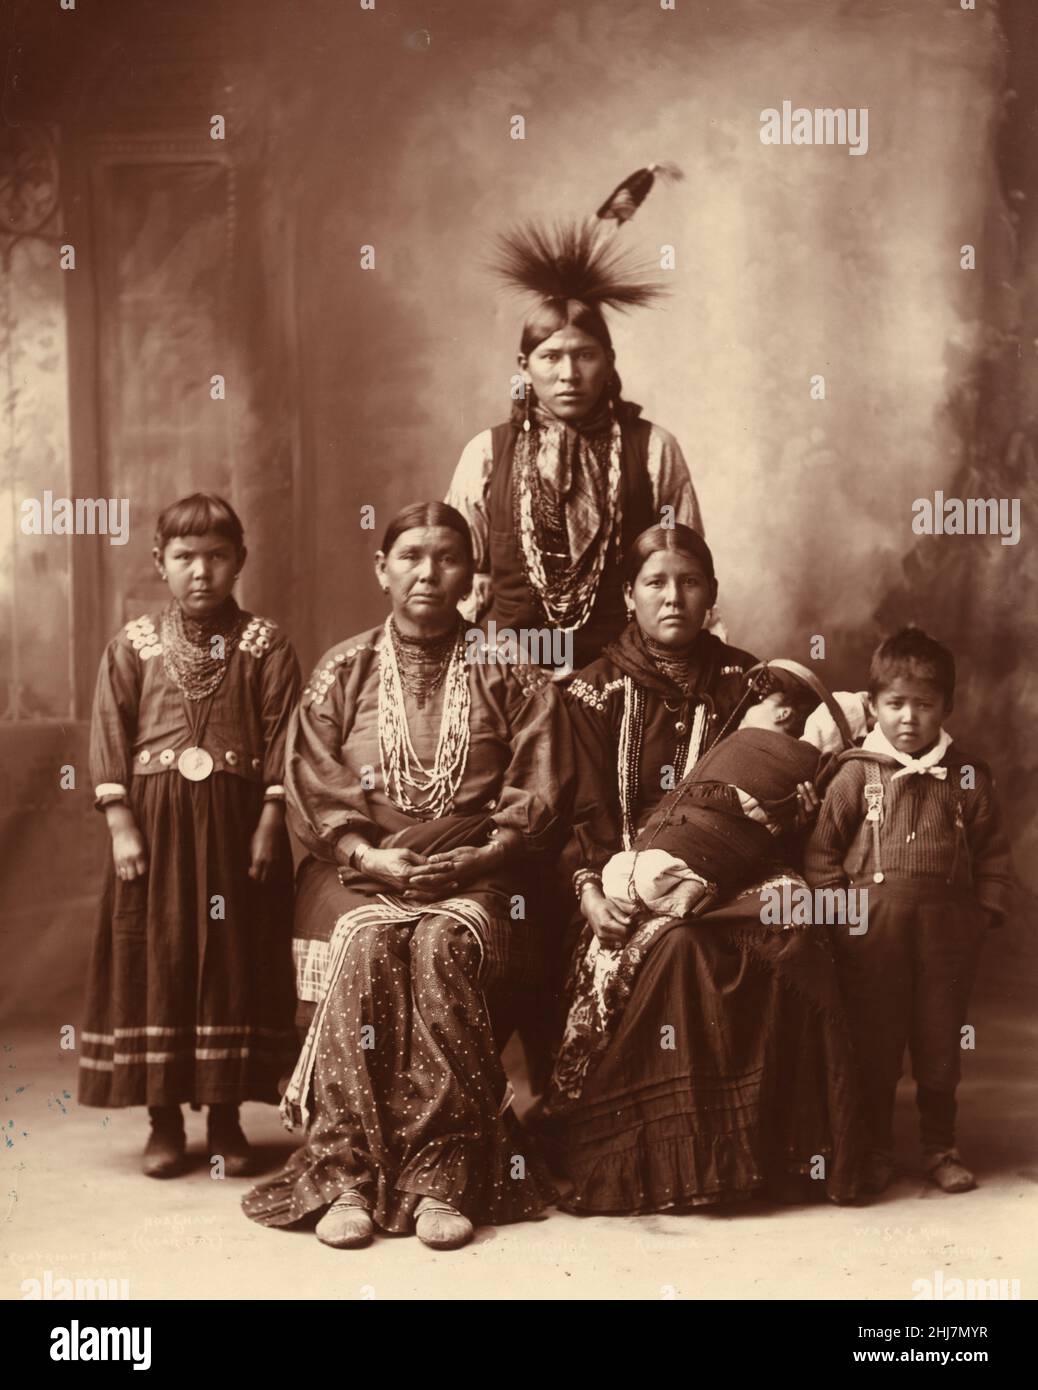 Antike und Vintage-Foto - indianer / Indianer - Sauk Indianer Familienportrait) - Foto von F.A. Rinehart, Omaha 1899. Stockfoto